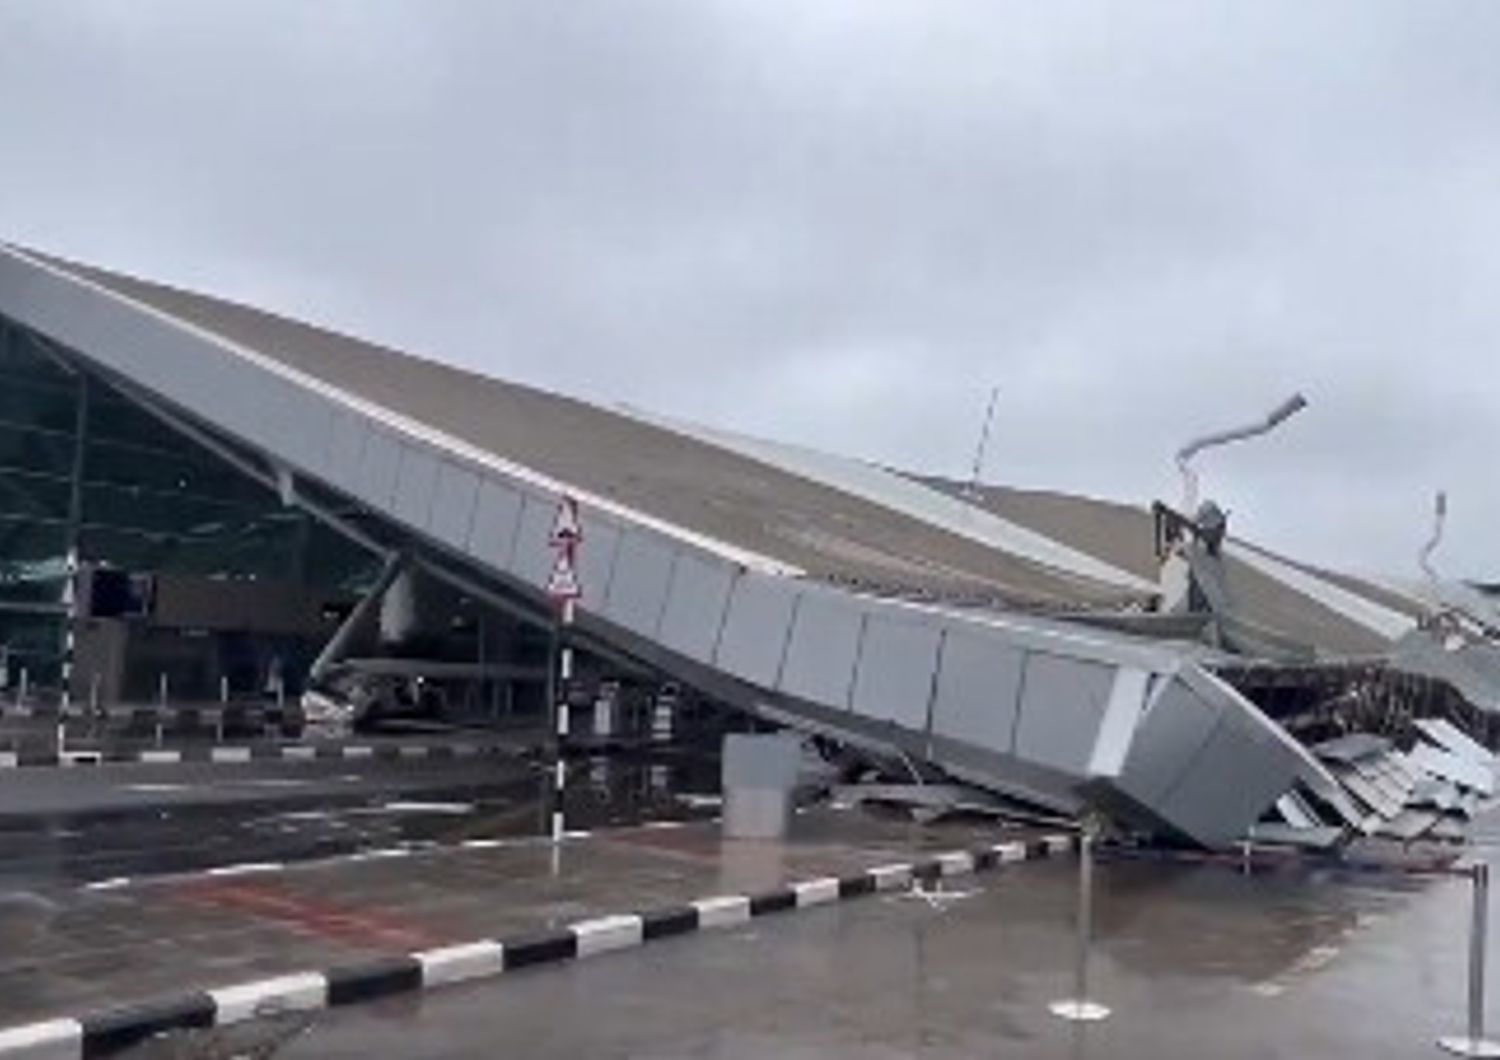 crolla tetto aeroporto nuova delhi morto feriti video